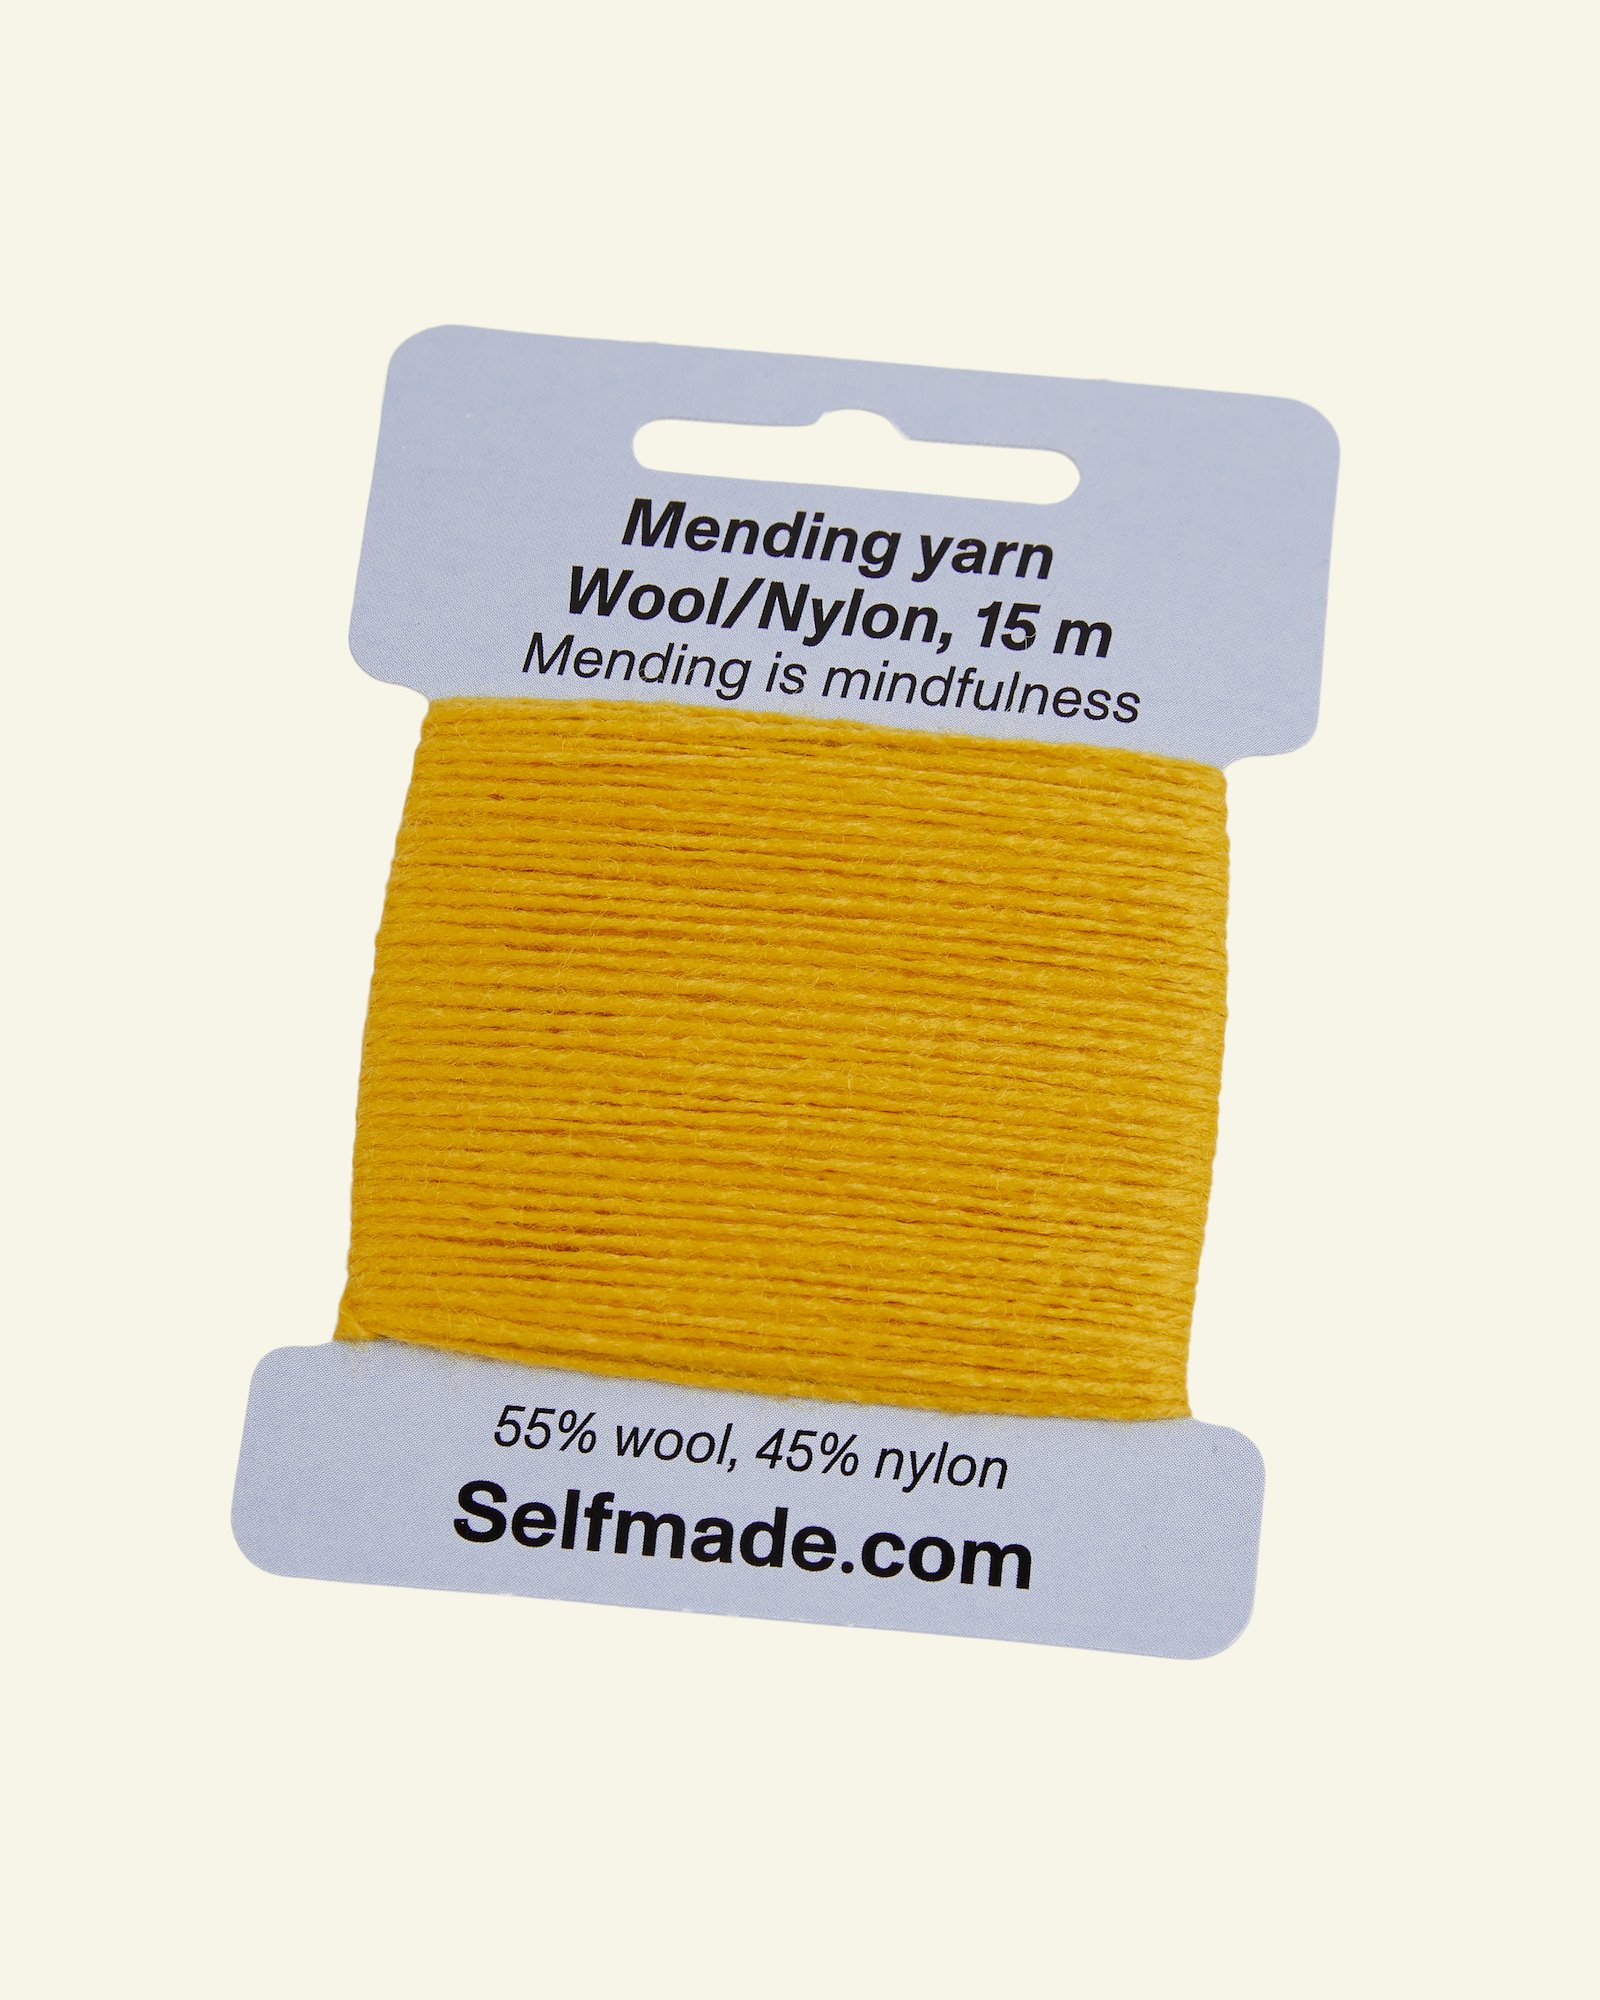 Mending yarn wool mix dark yellow 15m 35502_pack